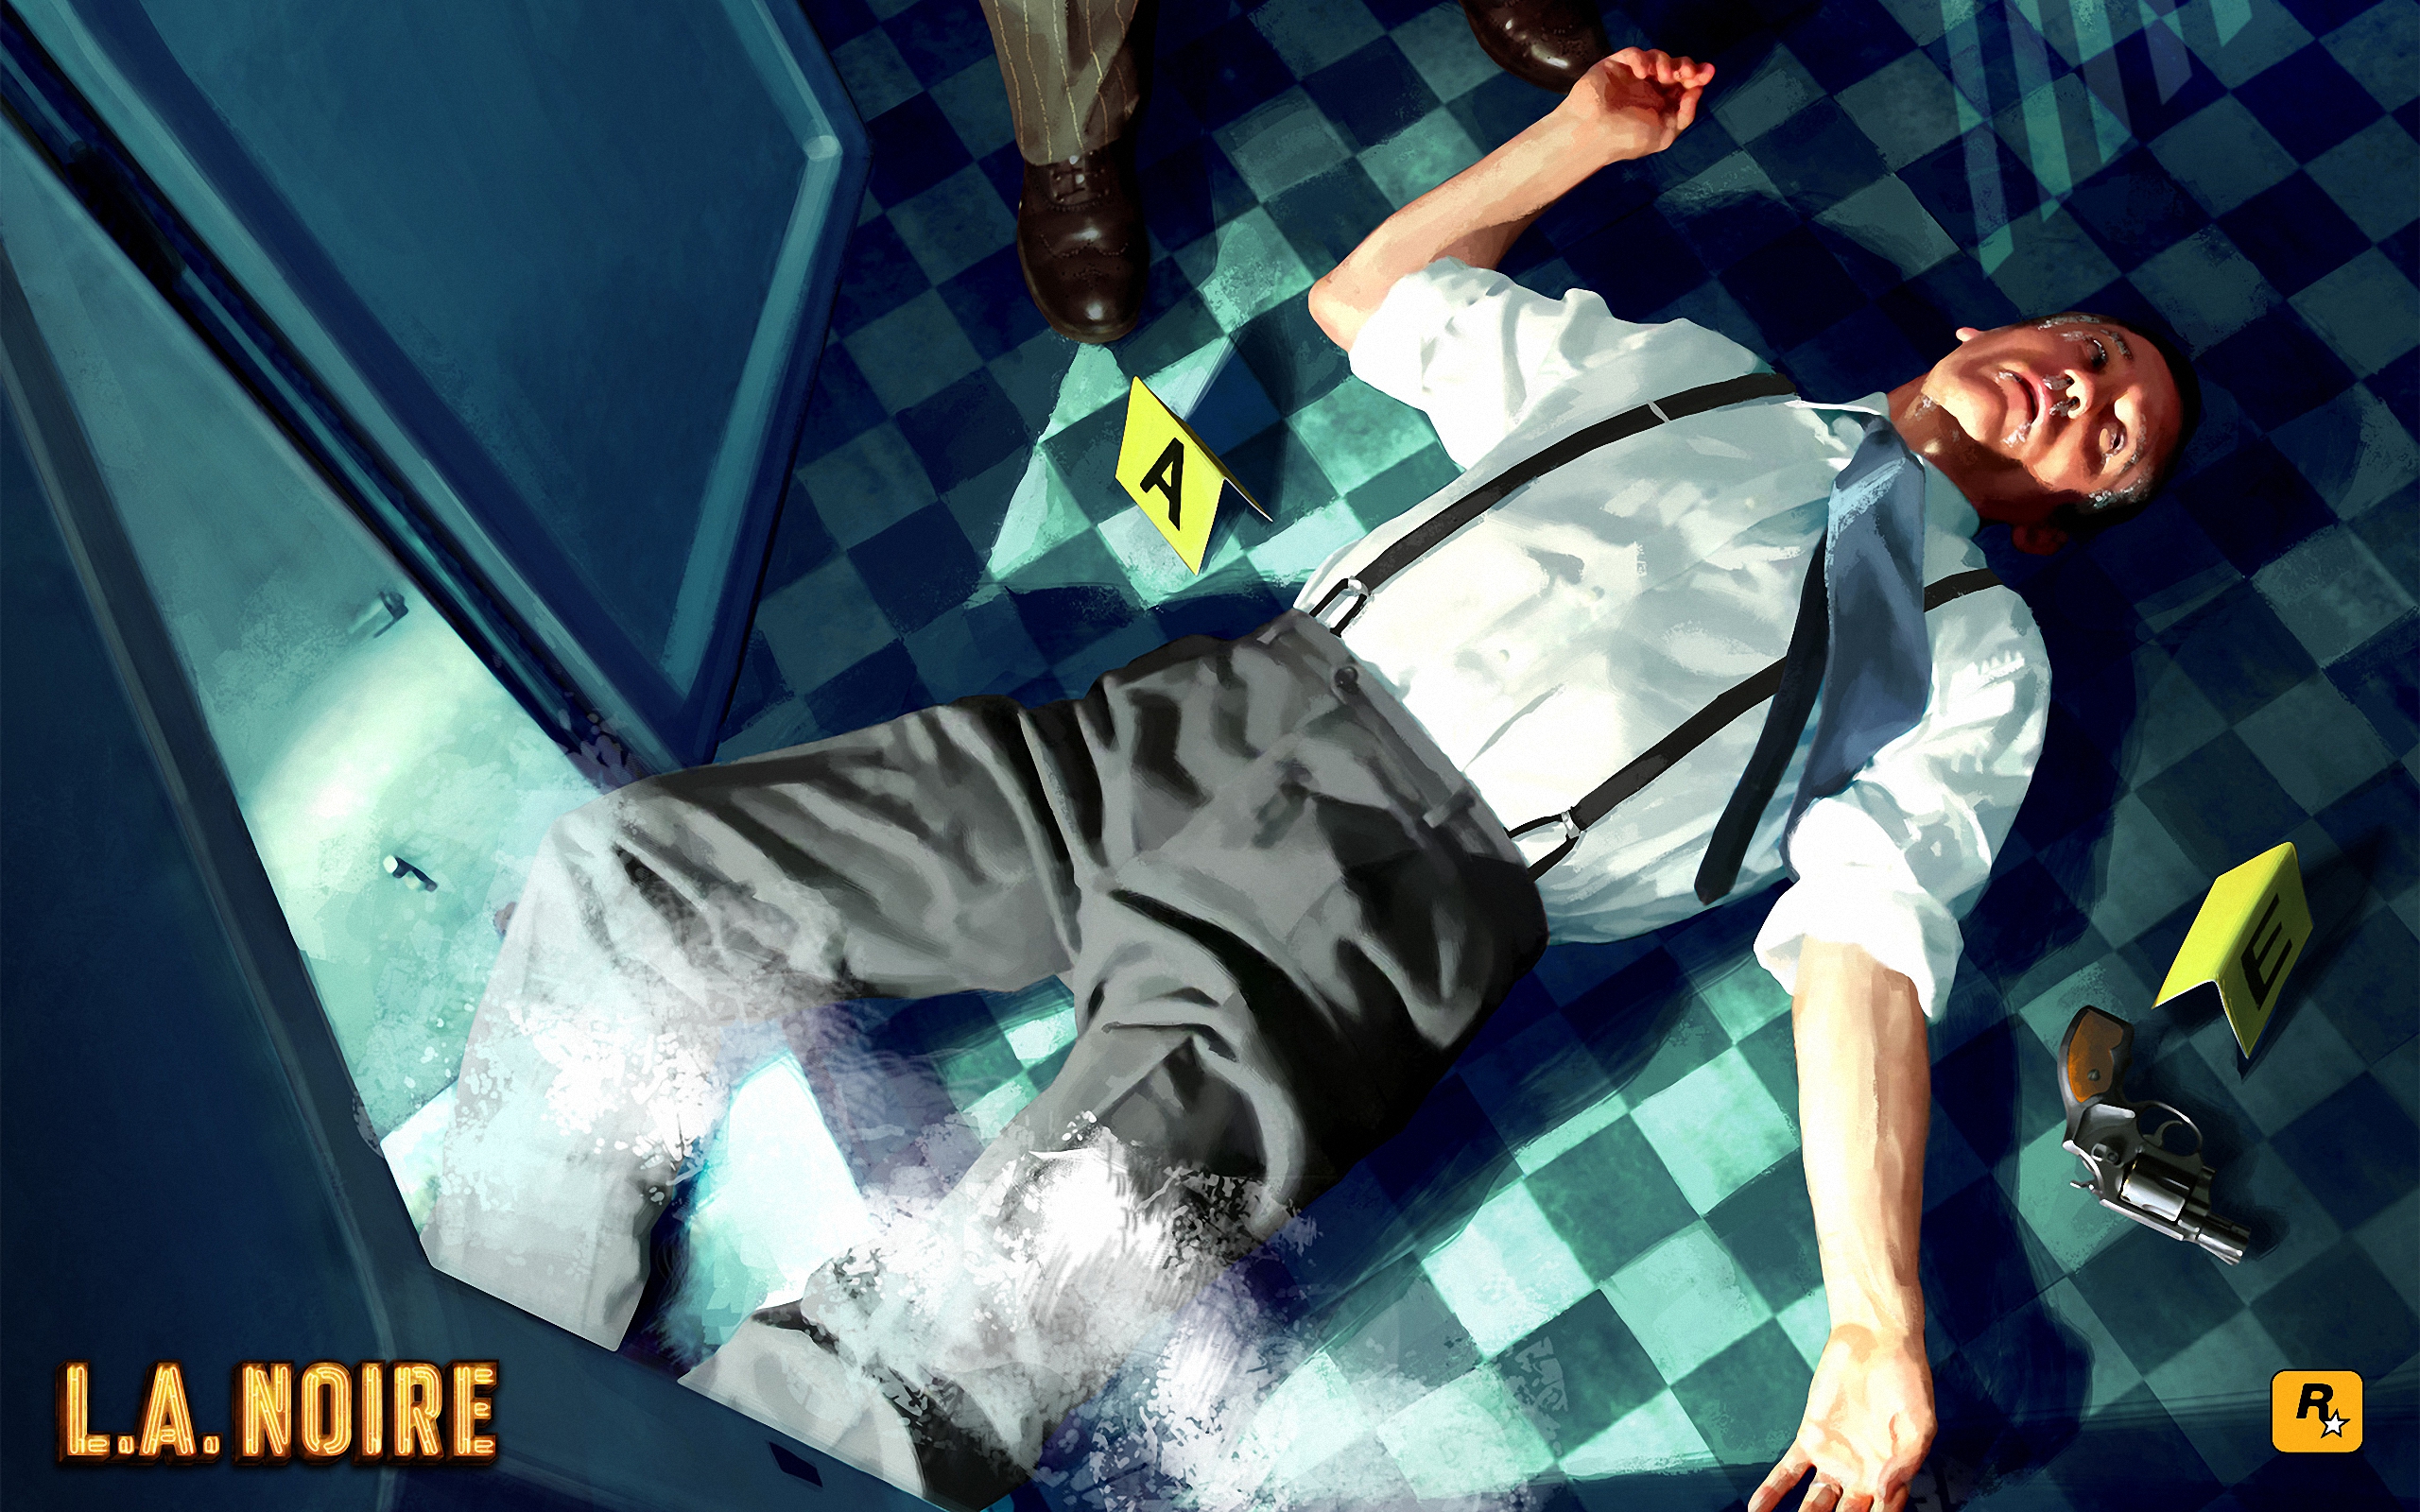 Bilder L.A. Noire computerspiel 2560x1600 Spiele